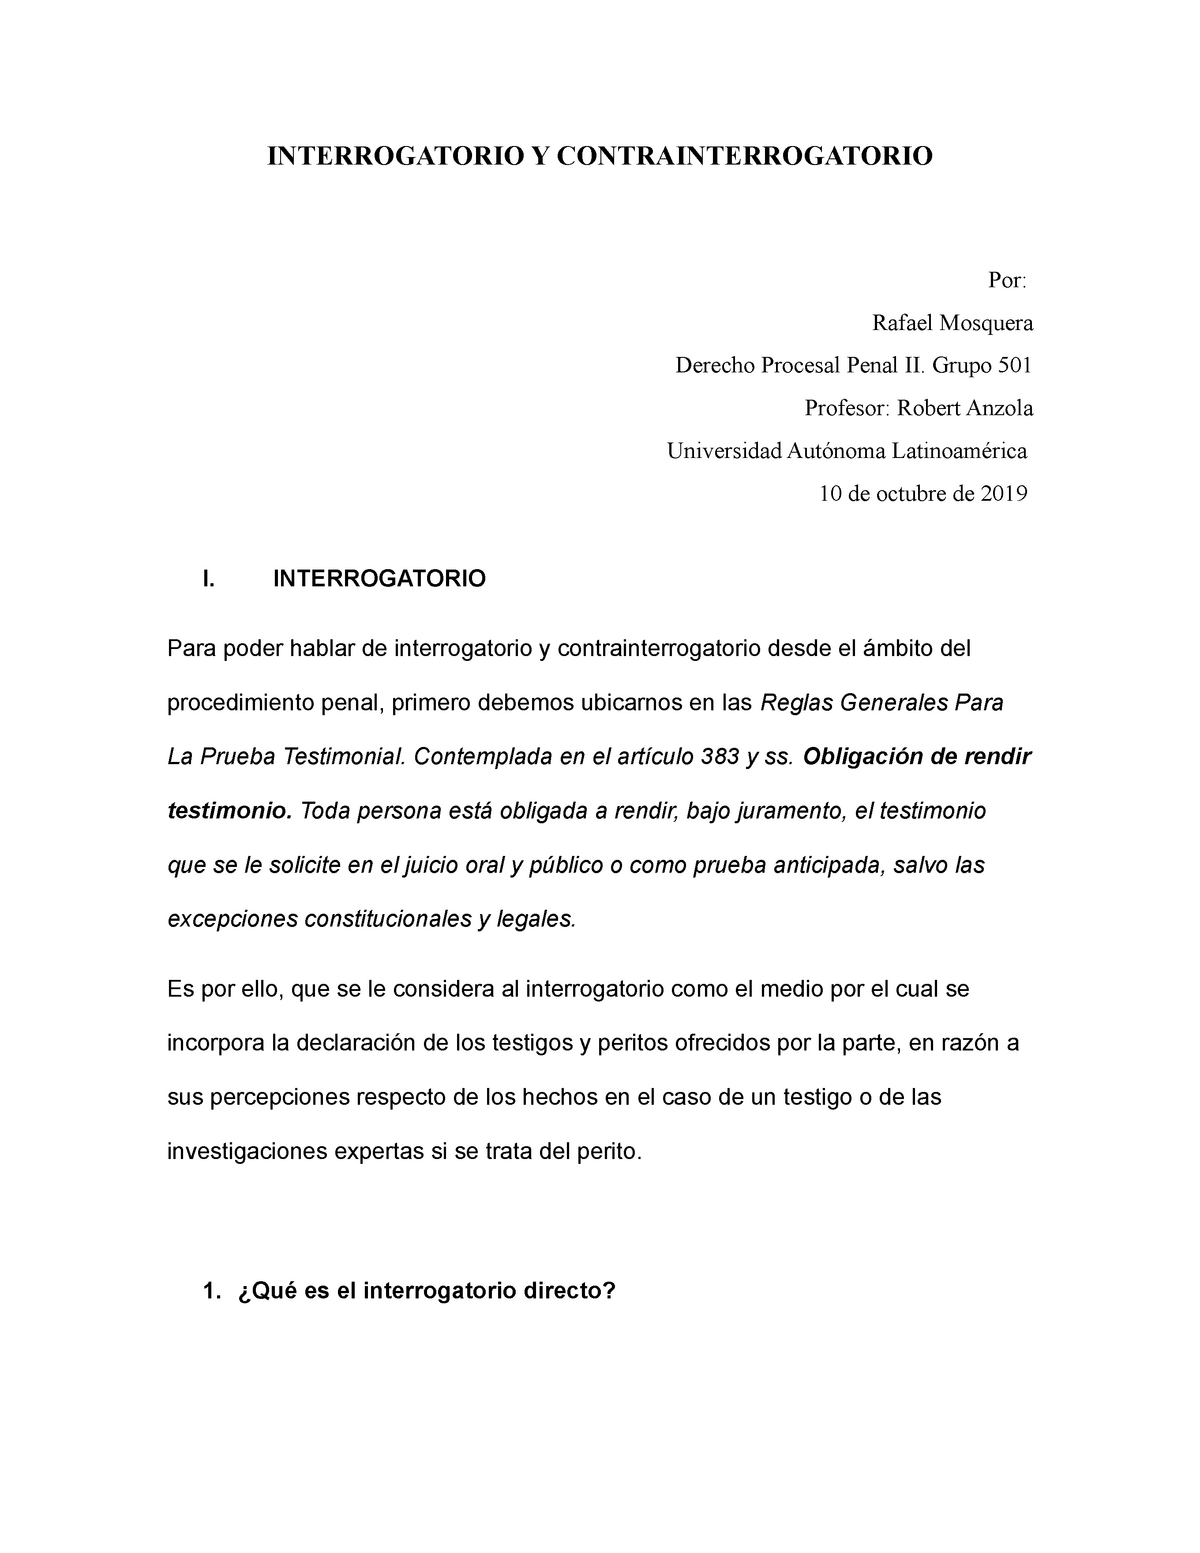 Trabajo Interrogatorio y contrainterrogatorio 10-10-19 - INTERROGATORIO Y  CONTRAINTERROGATORIO Por: - Studocu